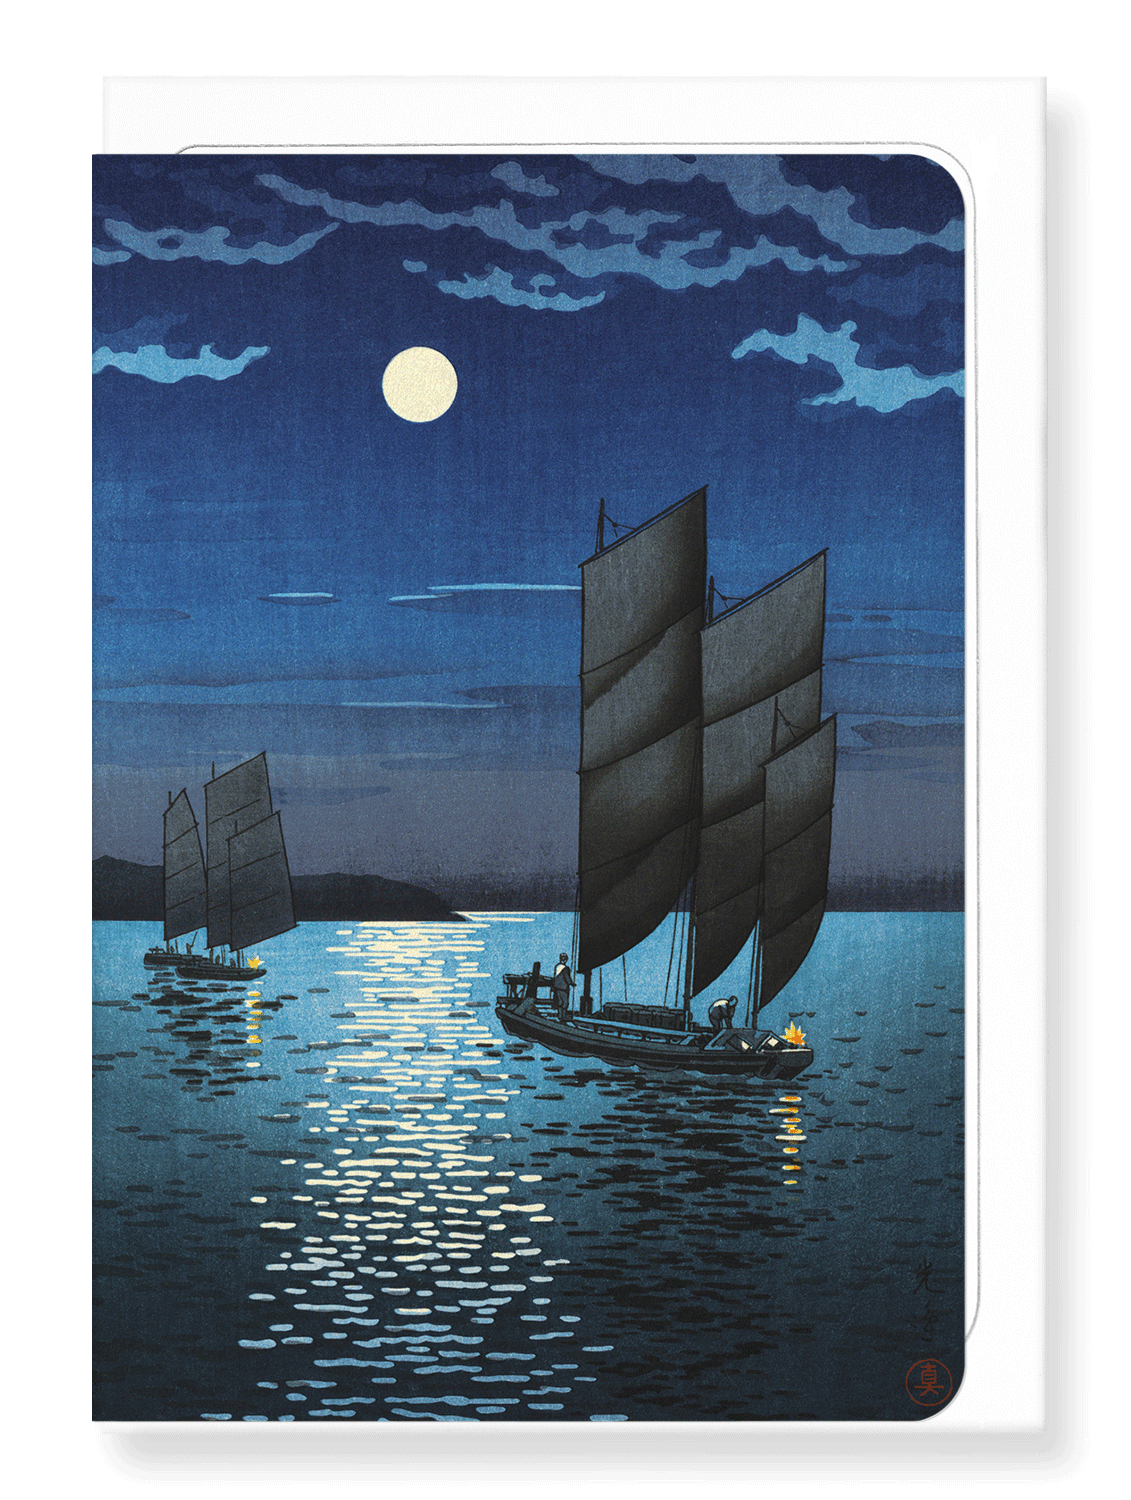 Ezen Designs - Boats at shinagawa night - Greeting Card - Front